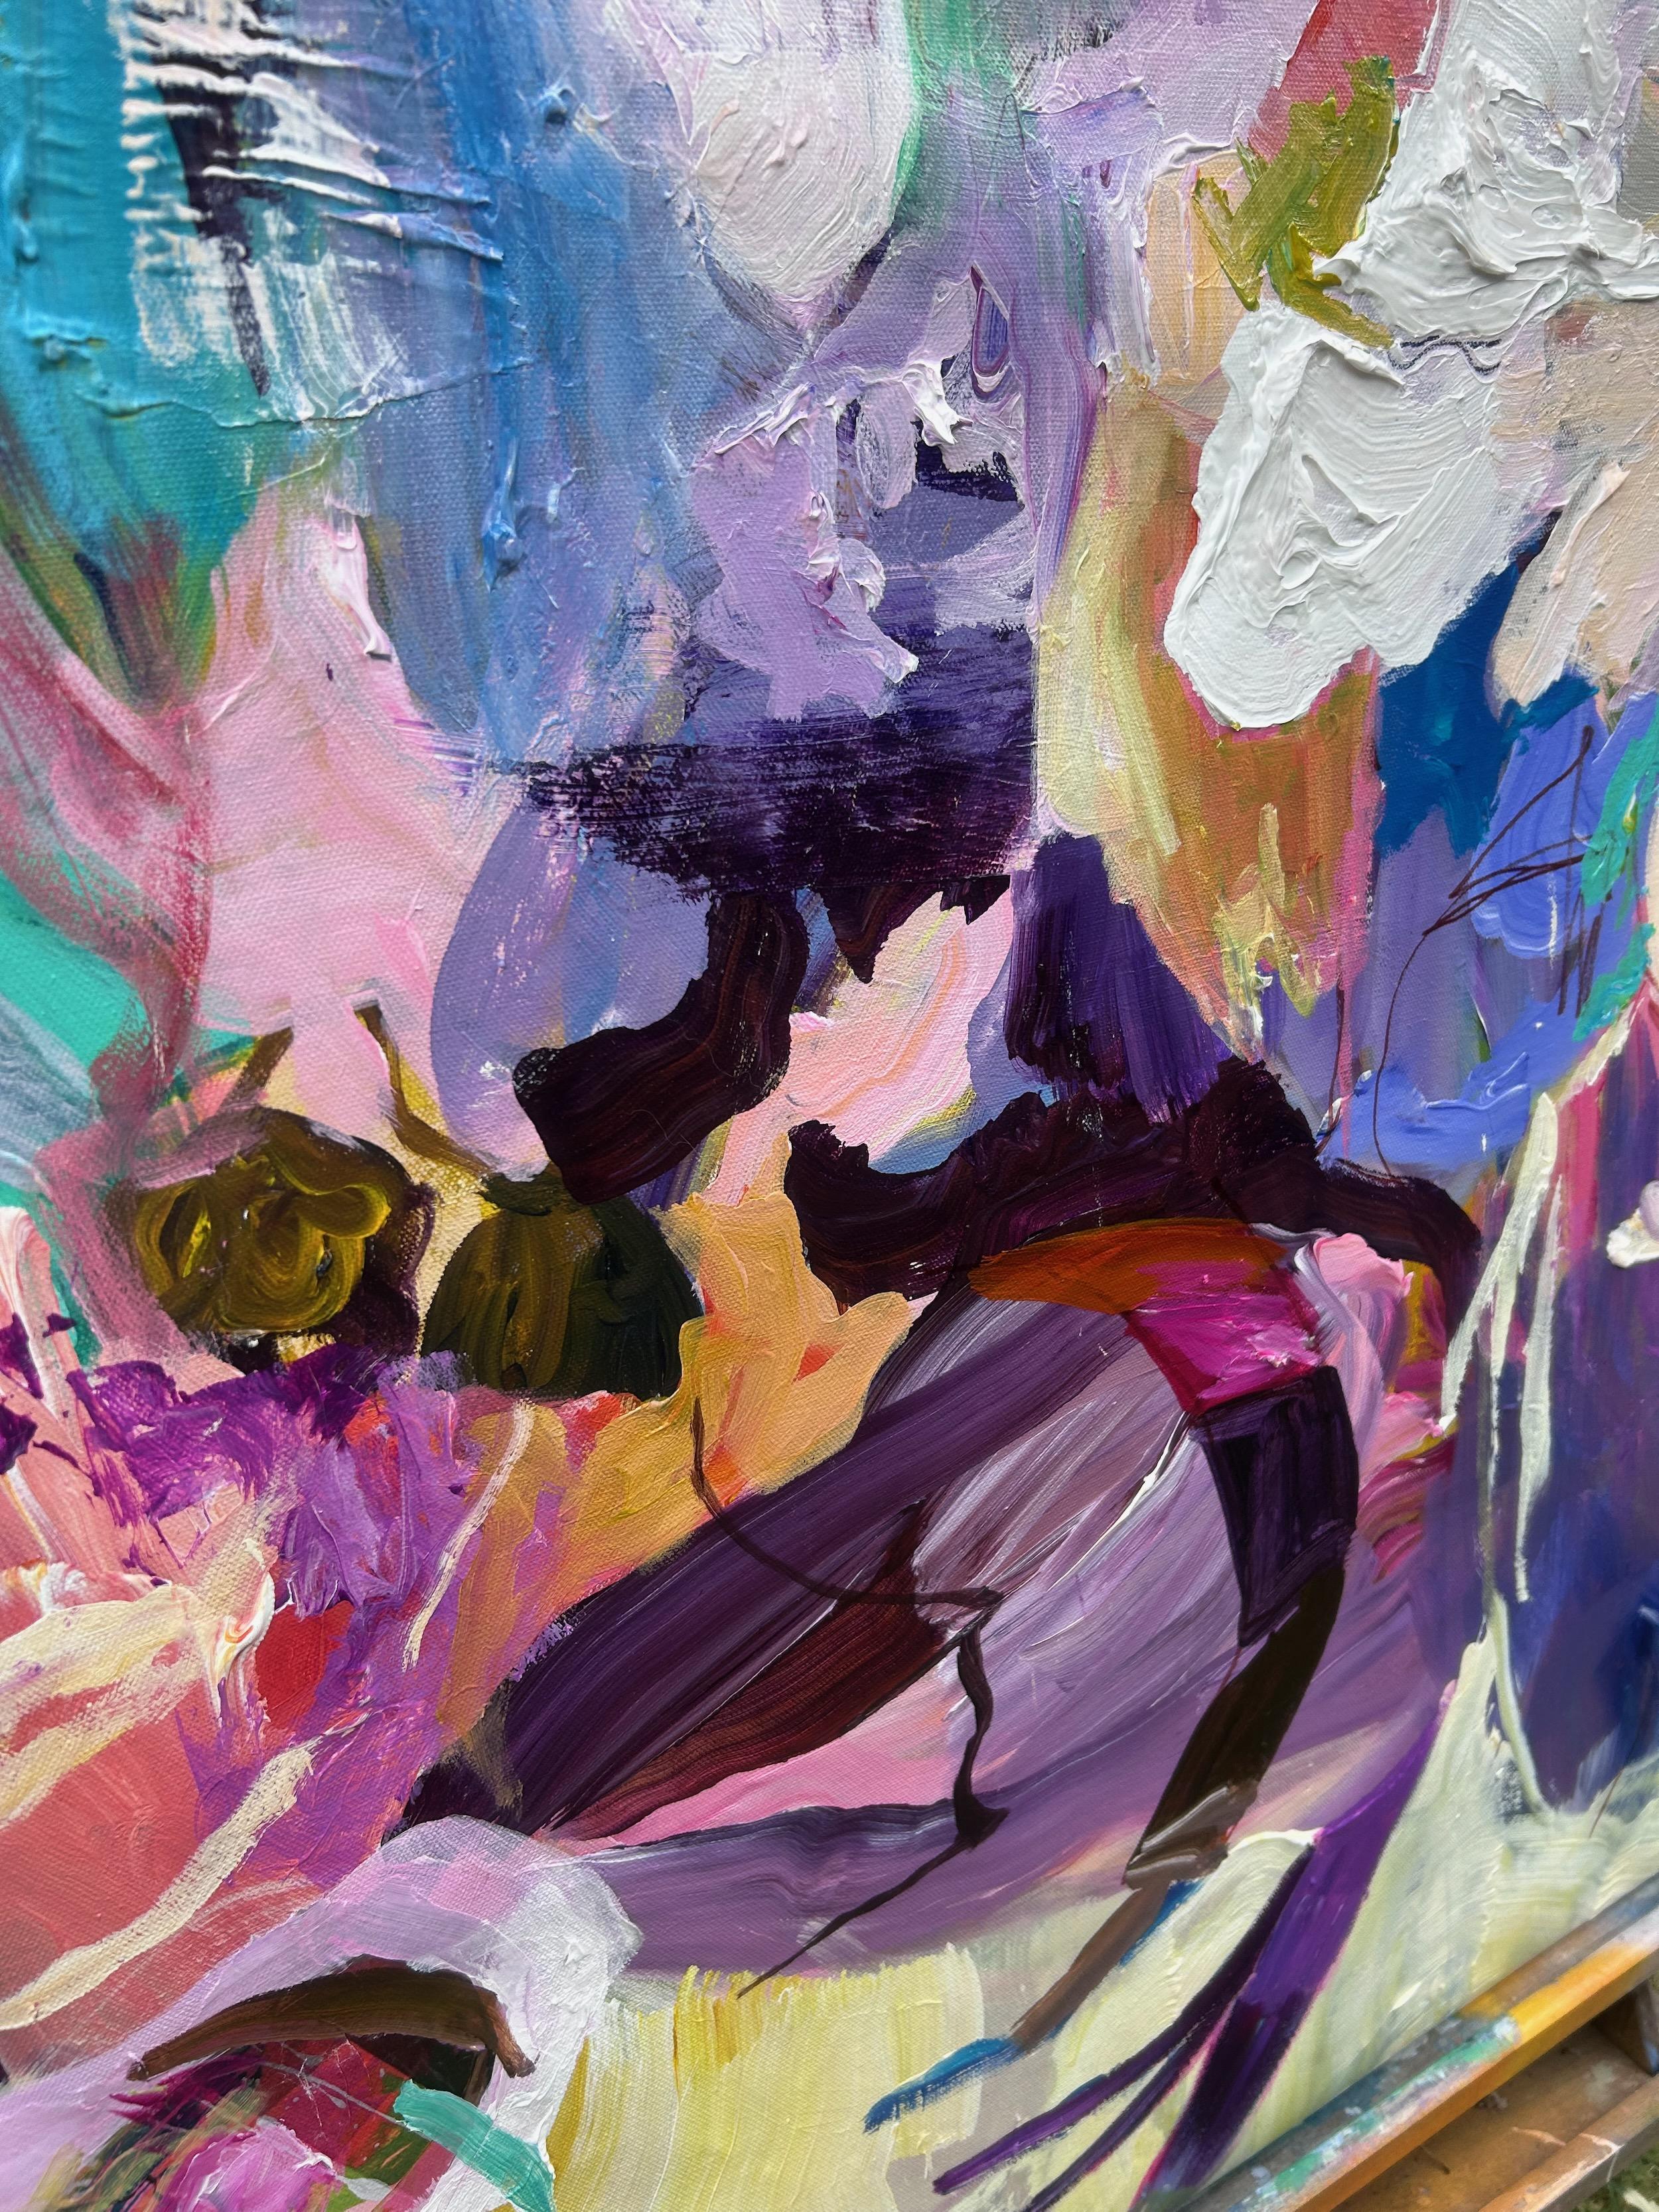 <p>Commentaires de l'artisteCette grande peinture abstraite se caractérise par des contrastes audacieux et des détails texturaux complexes.<br> Les fleurs d'un bleu, d'un violet et d'un jaune éclatants confèrent à la composition une qualité